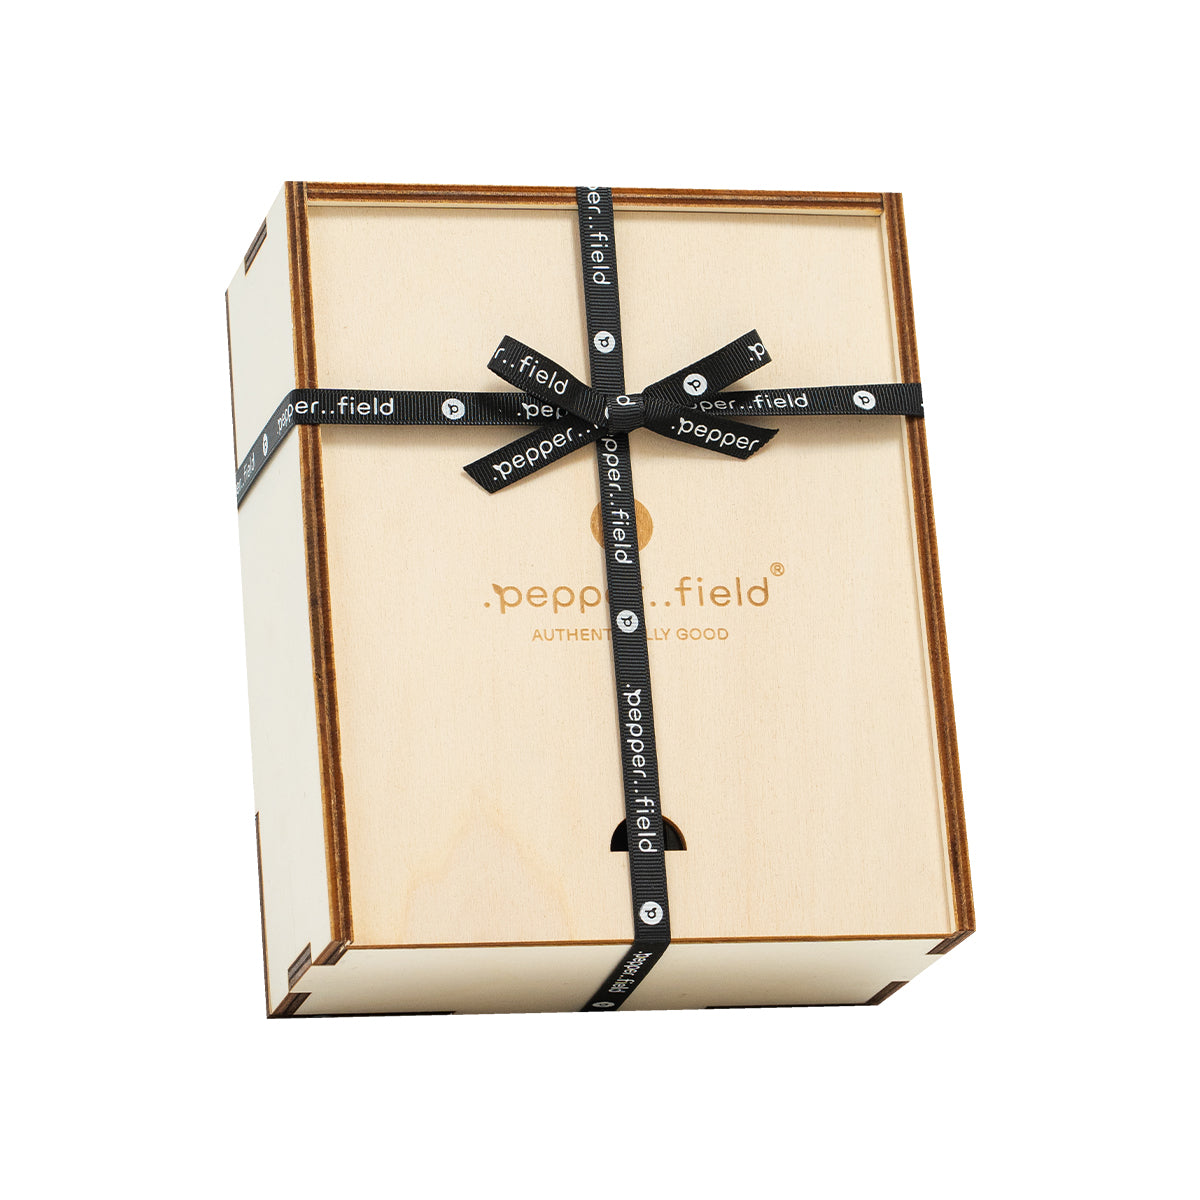 Skandinavische Pfeffermühle mit Glasröhrchen mit Kampot-Pfeffer in einer Geschenkbox aus Holz (3x10g)